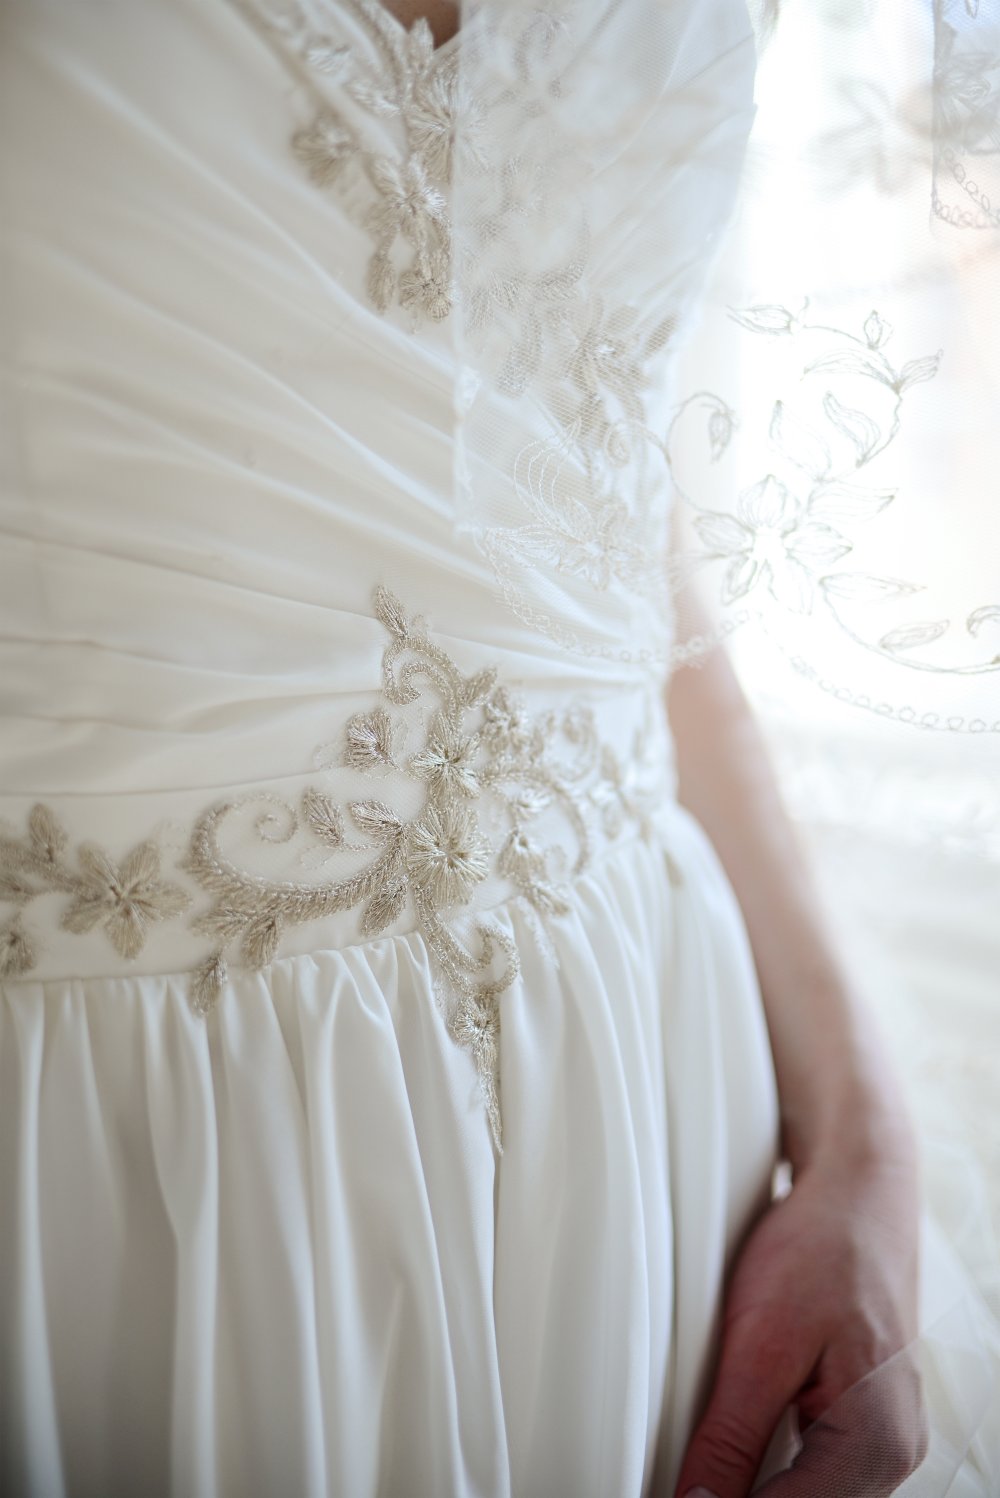 Вышивка на свадебном платье Венера и идеально подходящая к платью фата!